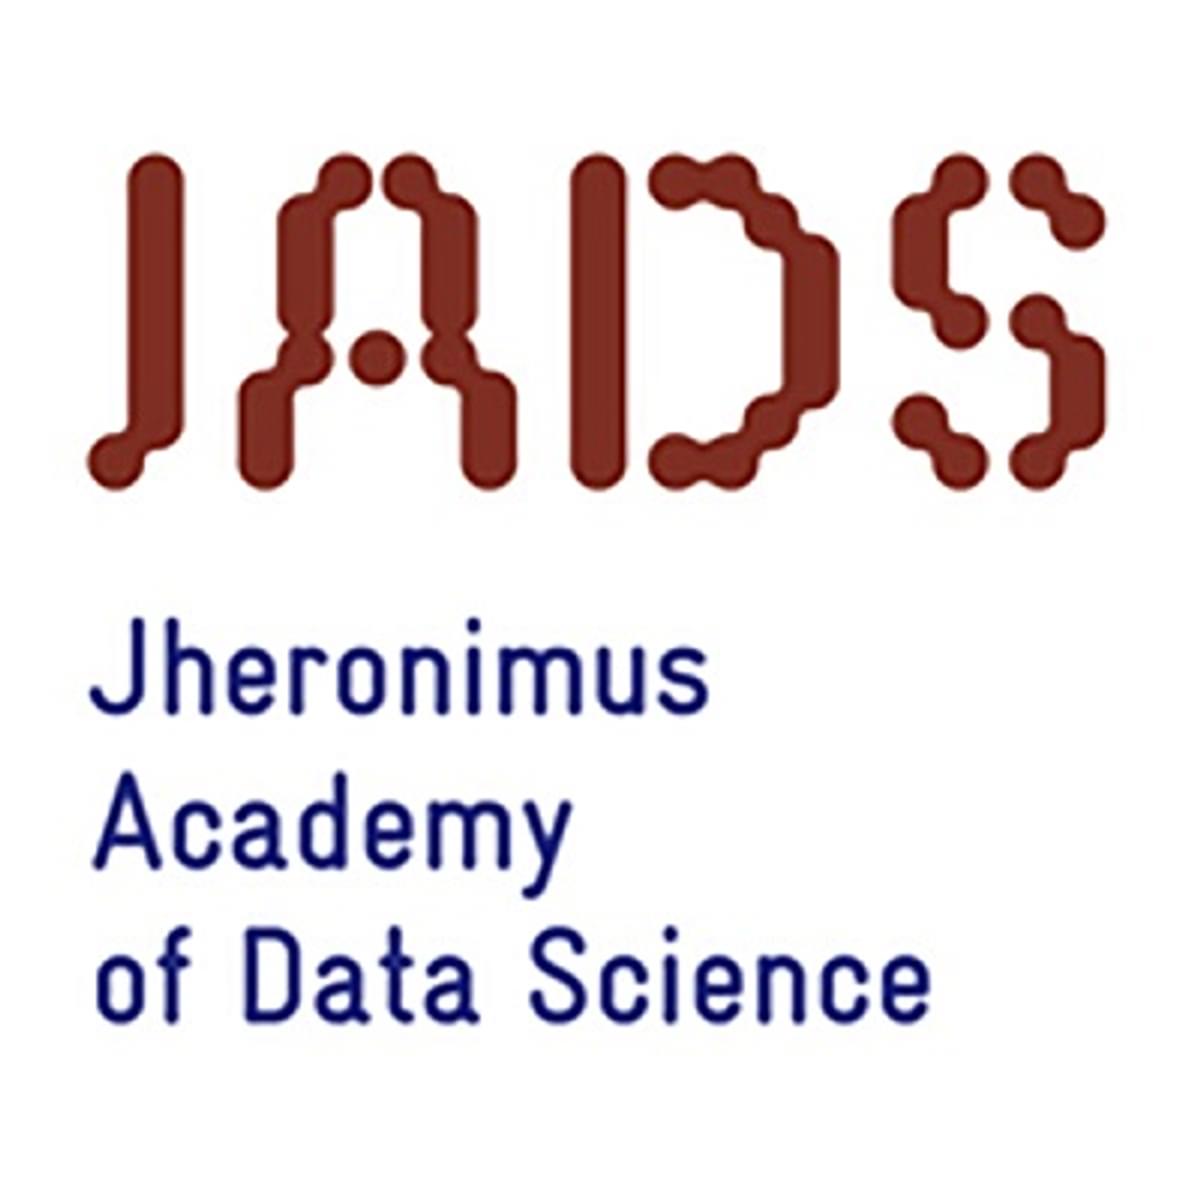 Jos van Hillegersberg Academisch Directeur Jheronimus Academy of Data Science image